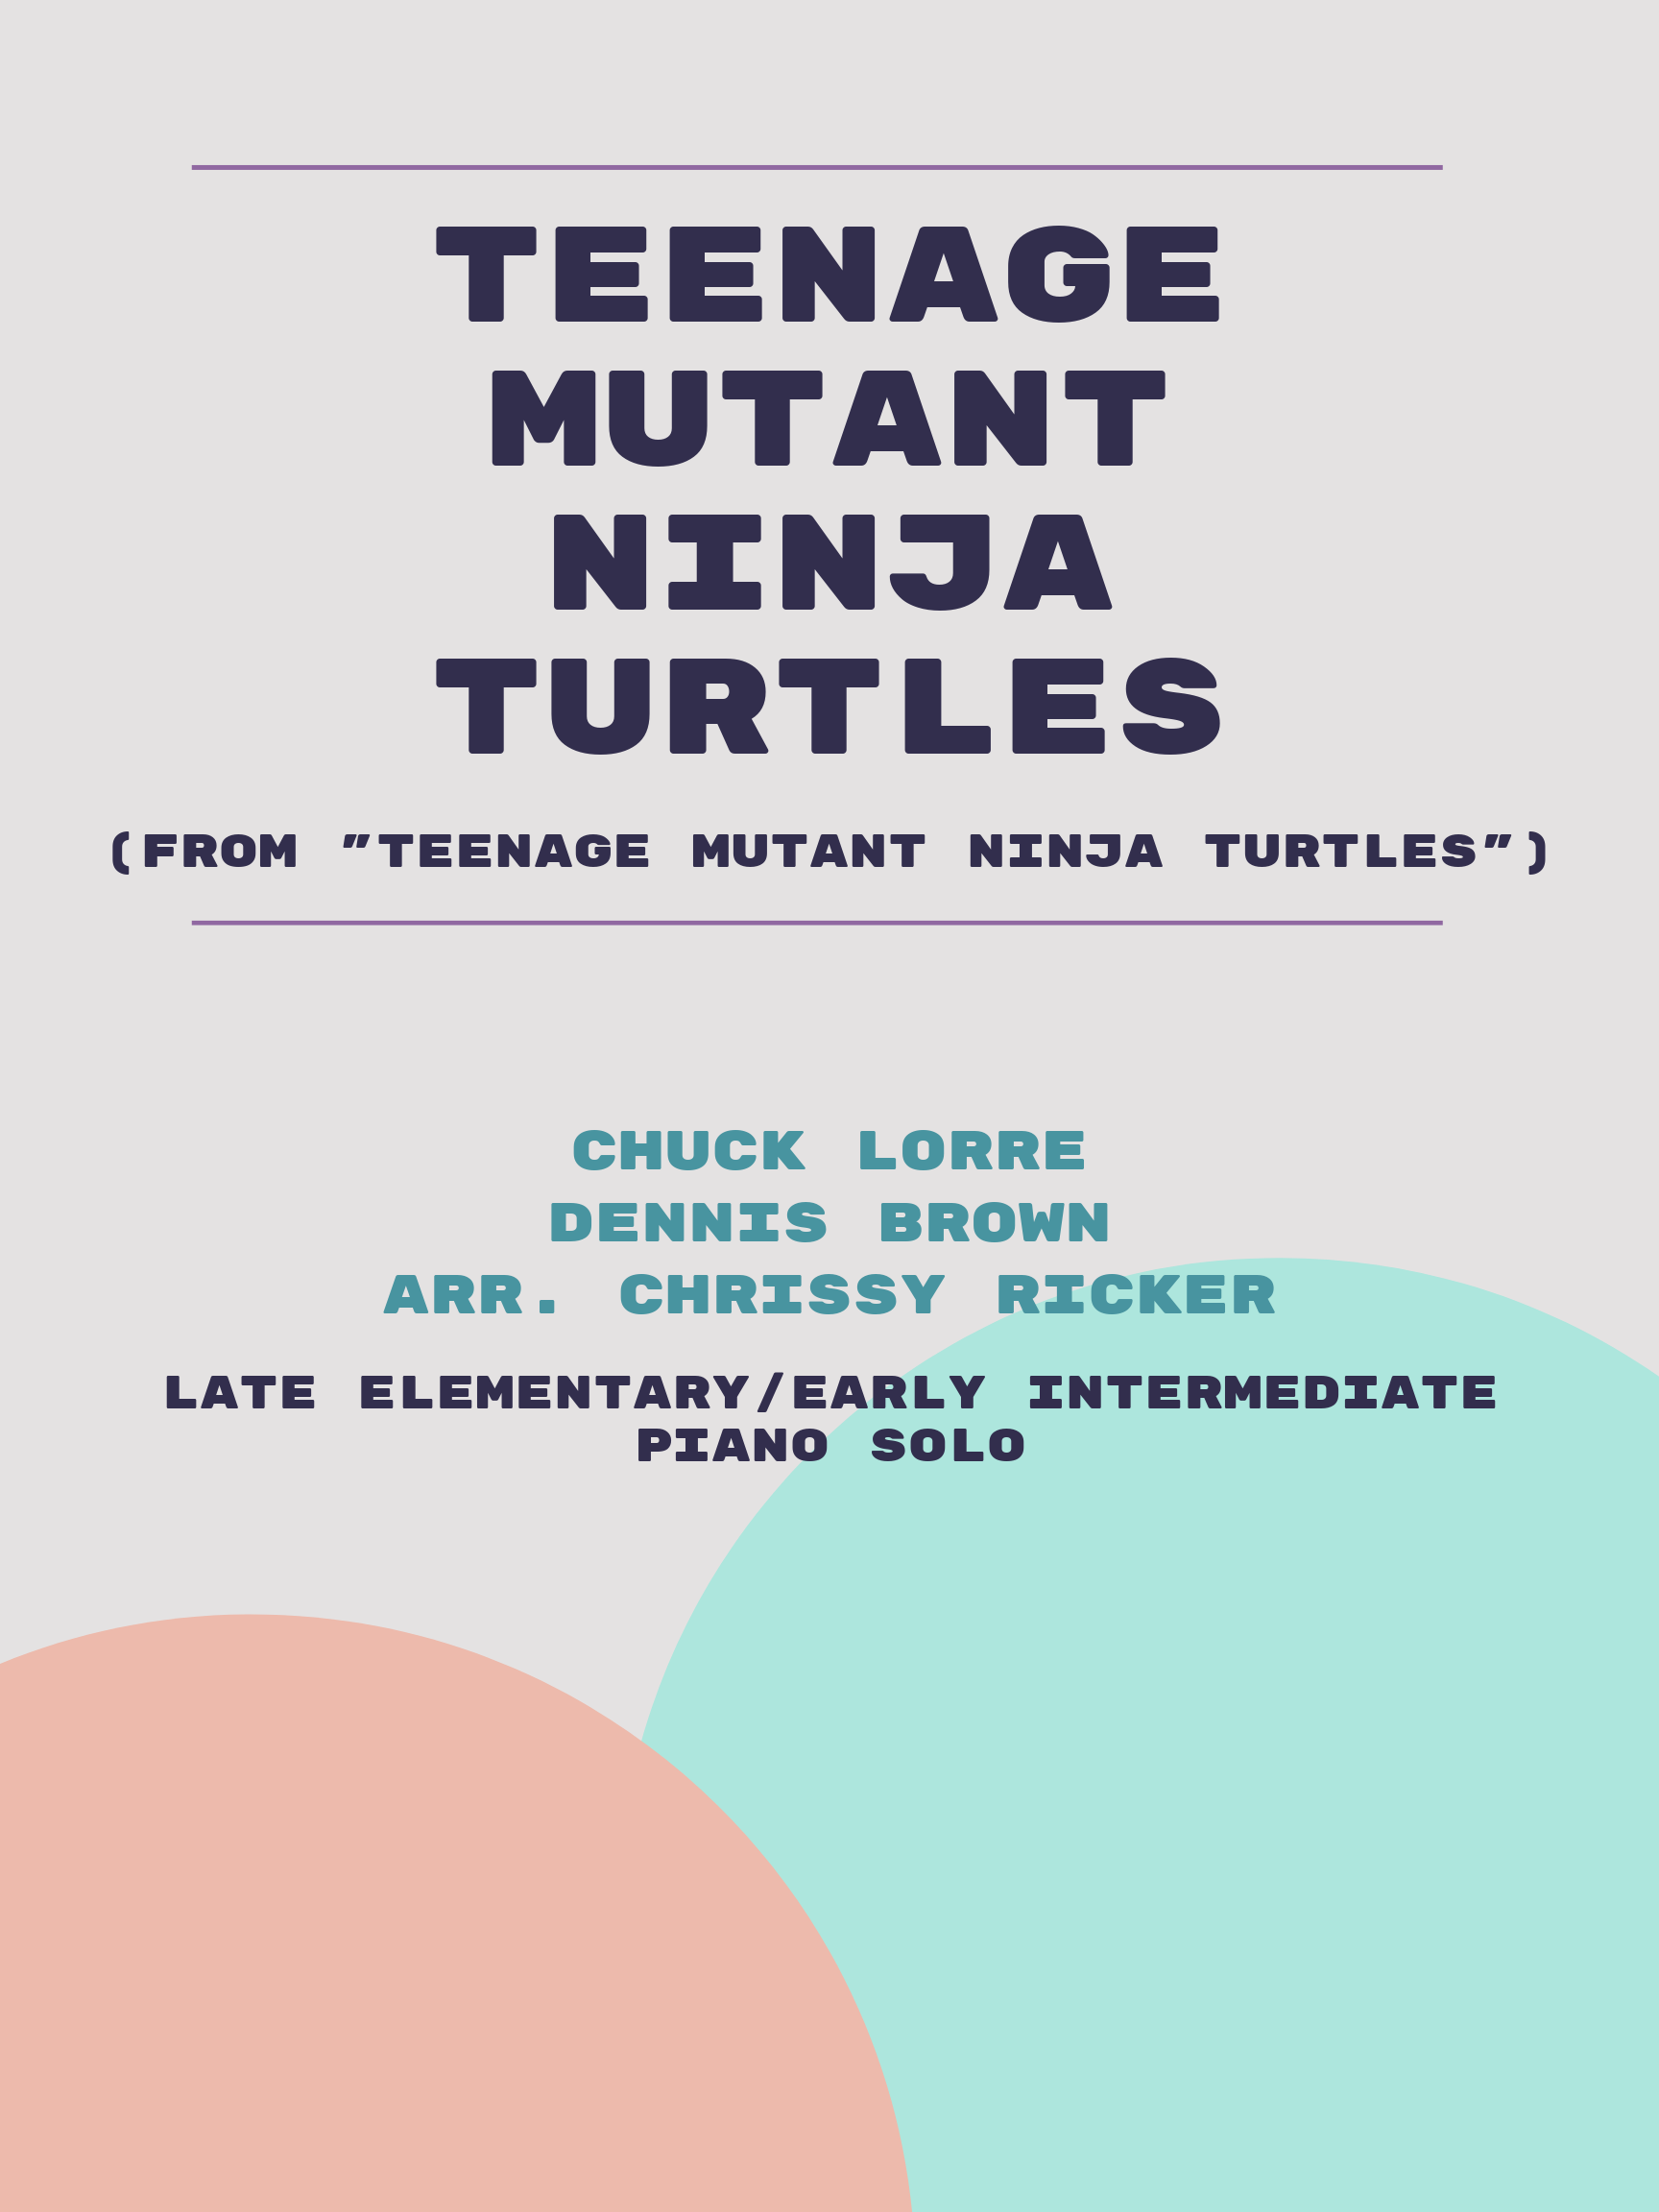 Teenage Mutant Ninja Turtles by Chuck Lorre, Dennis Brown